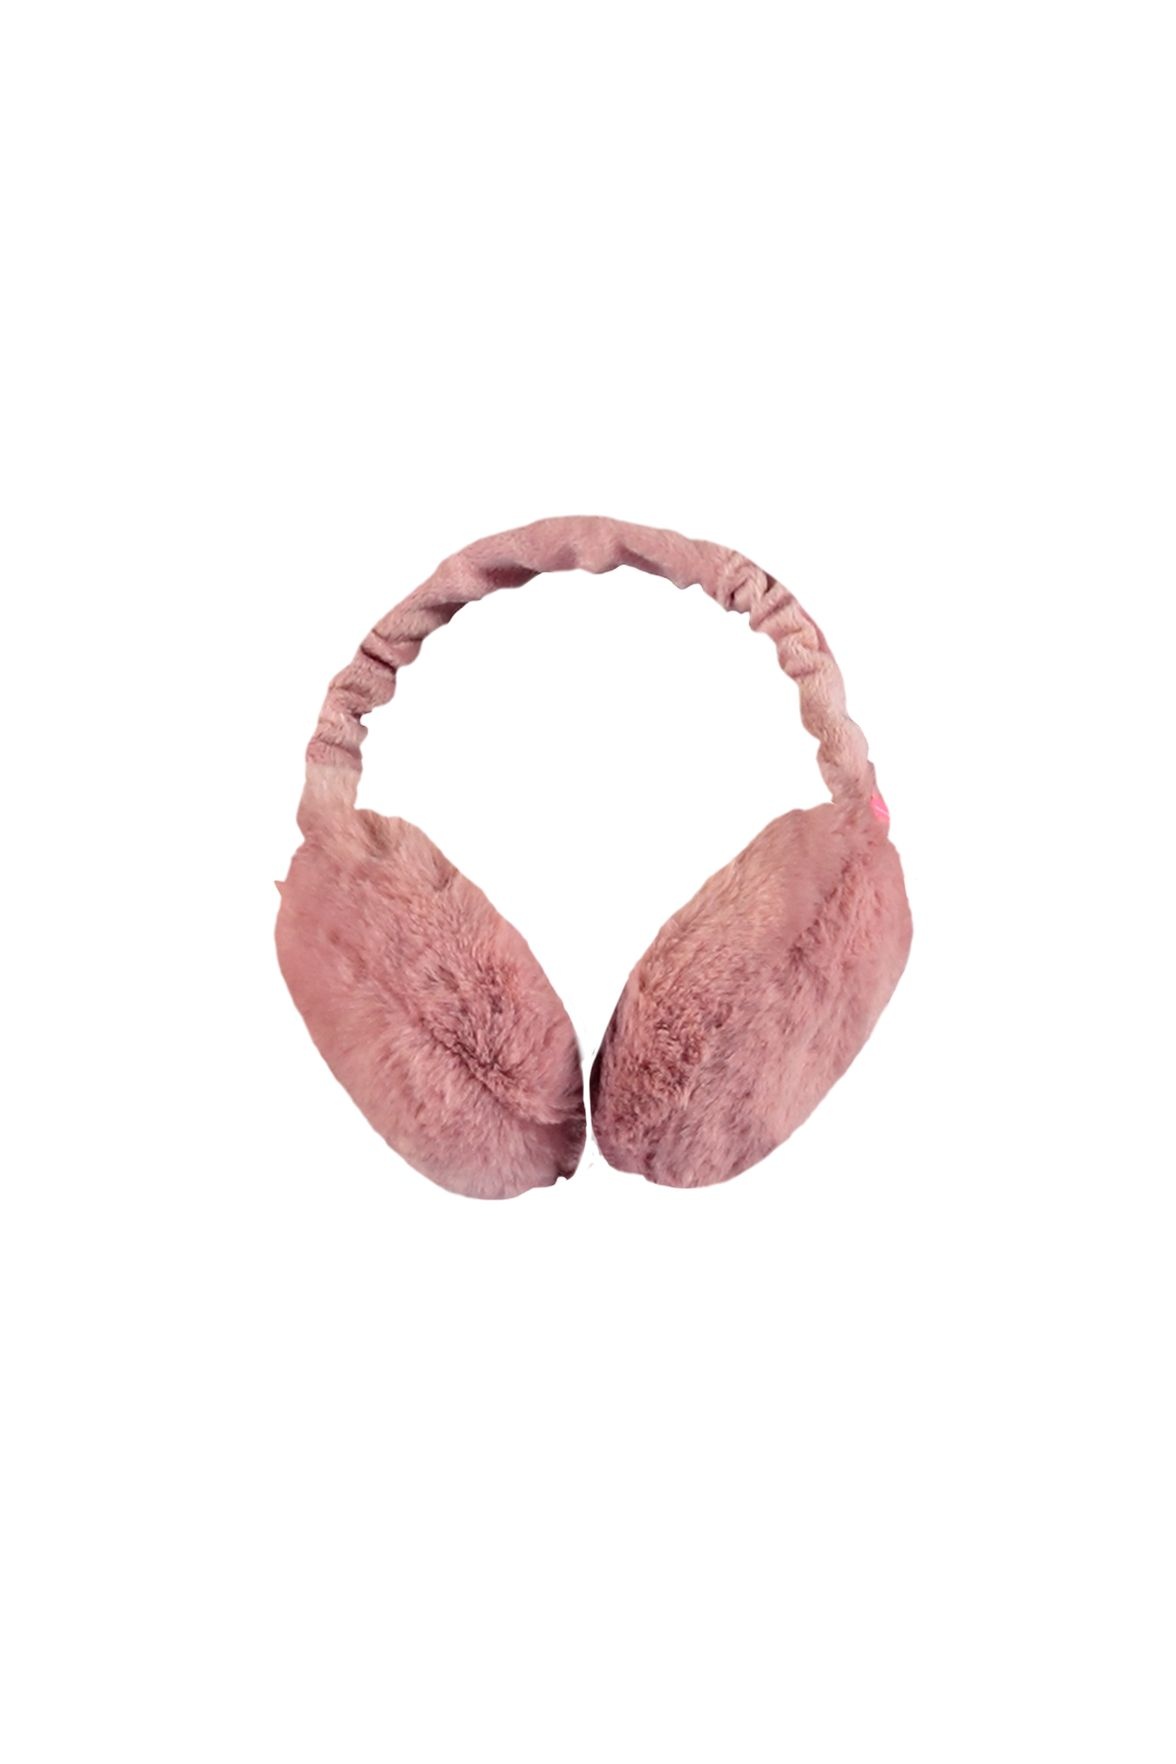 B.Nosy Meisjes oorwarmers fur - Primrose roze